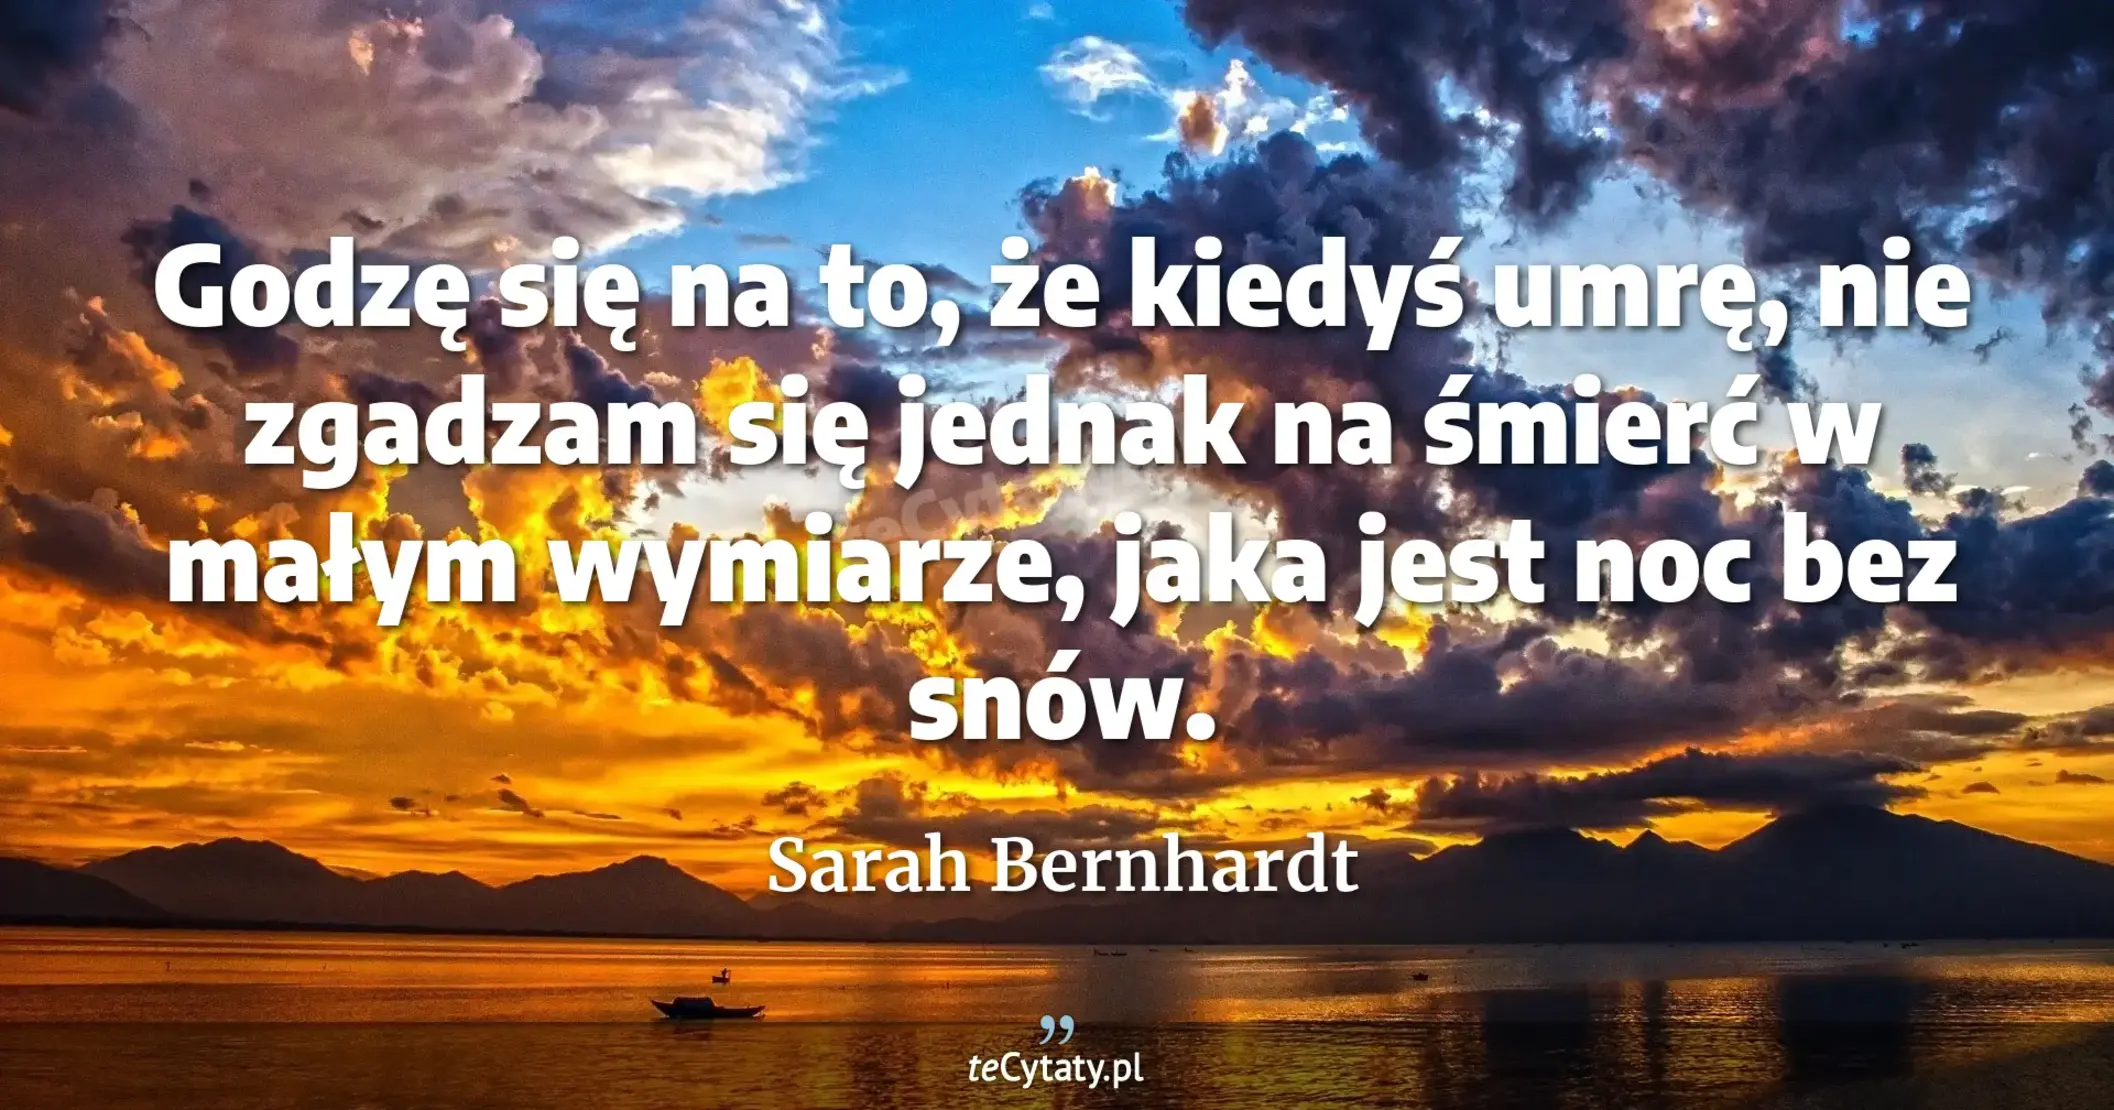 Godzę się na to, że kiedyś umrę, nie zgadzam się jednak na śmierć w małym wymiarze, jaka jest noc bez snów. - Sarah Bernhardt